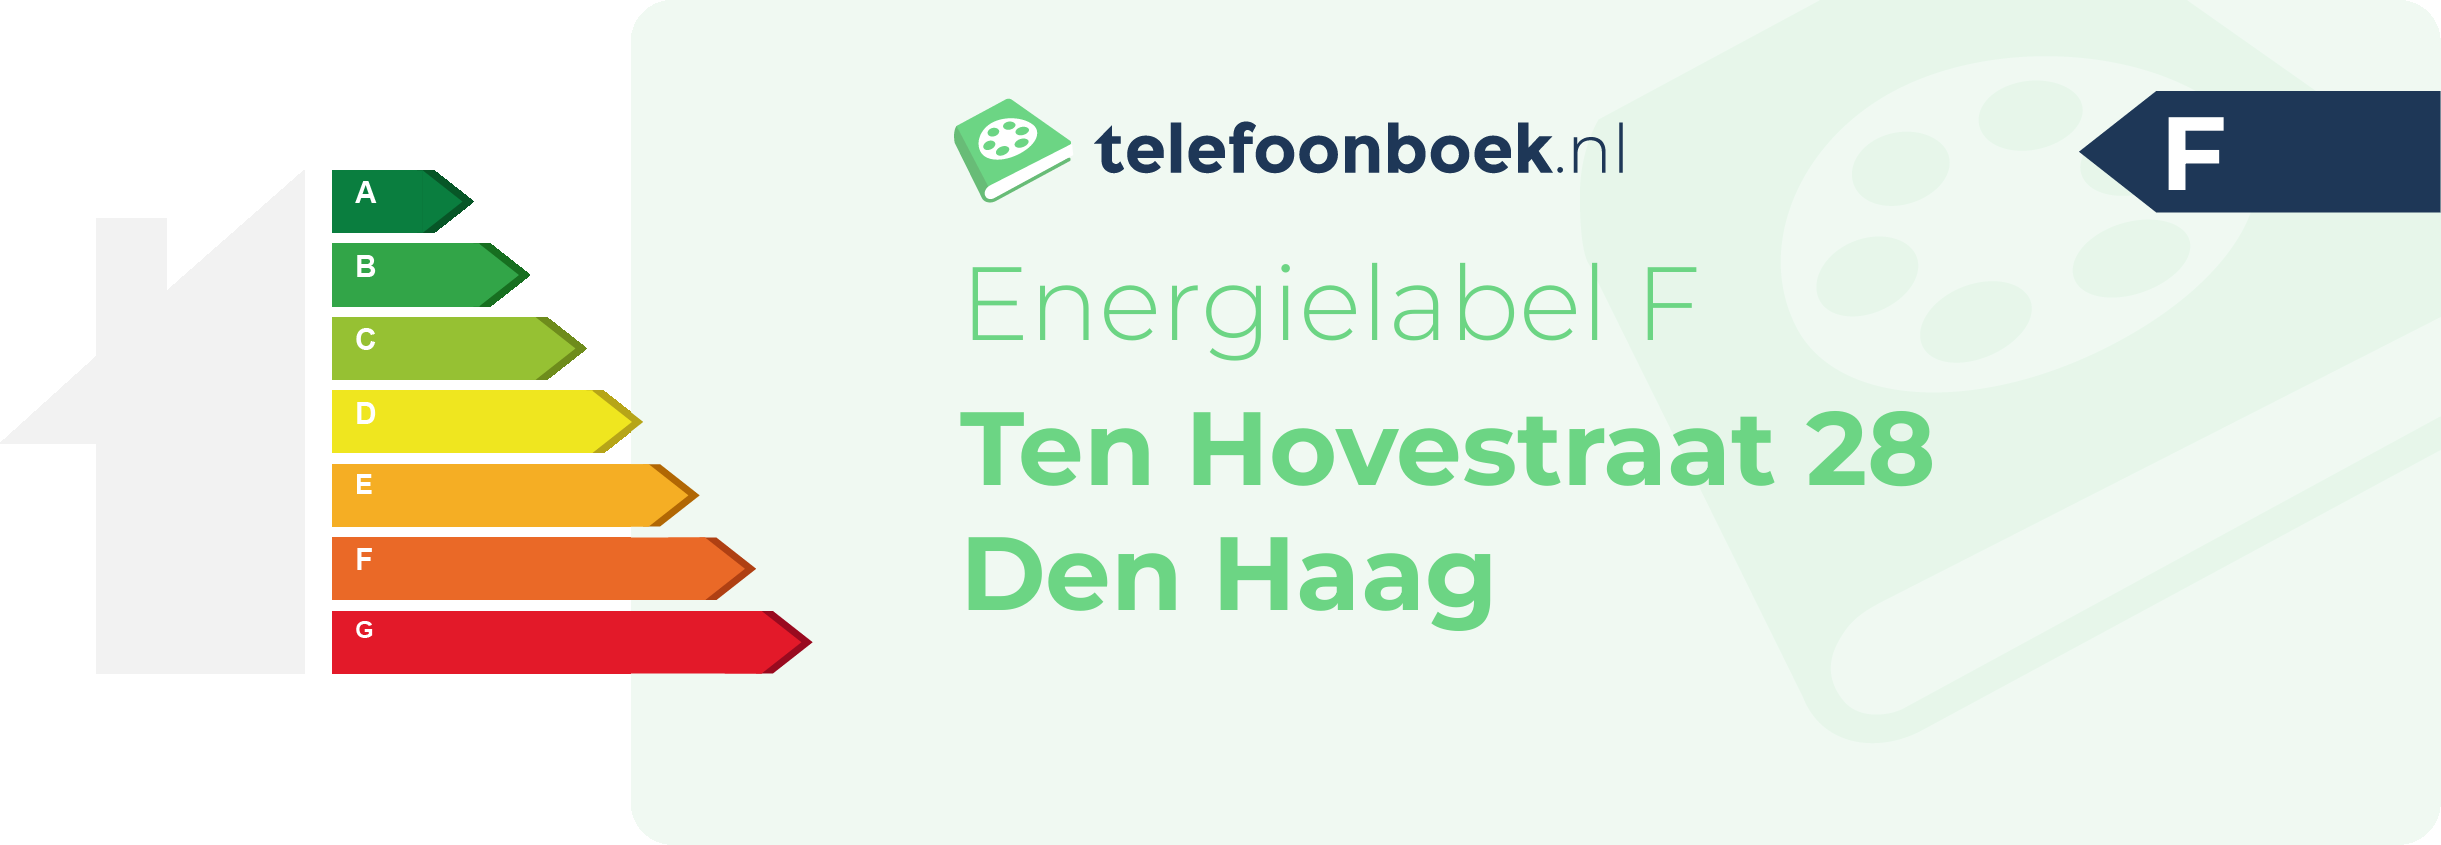 Energielabel Ten Hovestraat 28 Den Haag